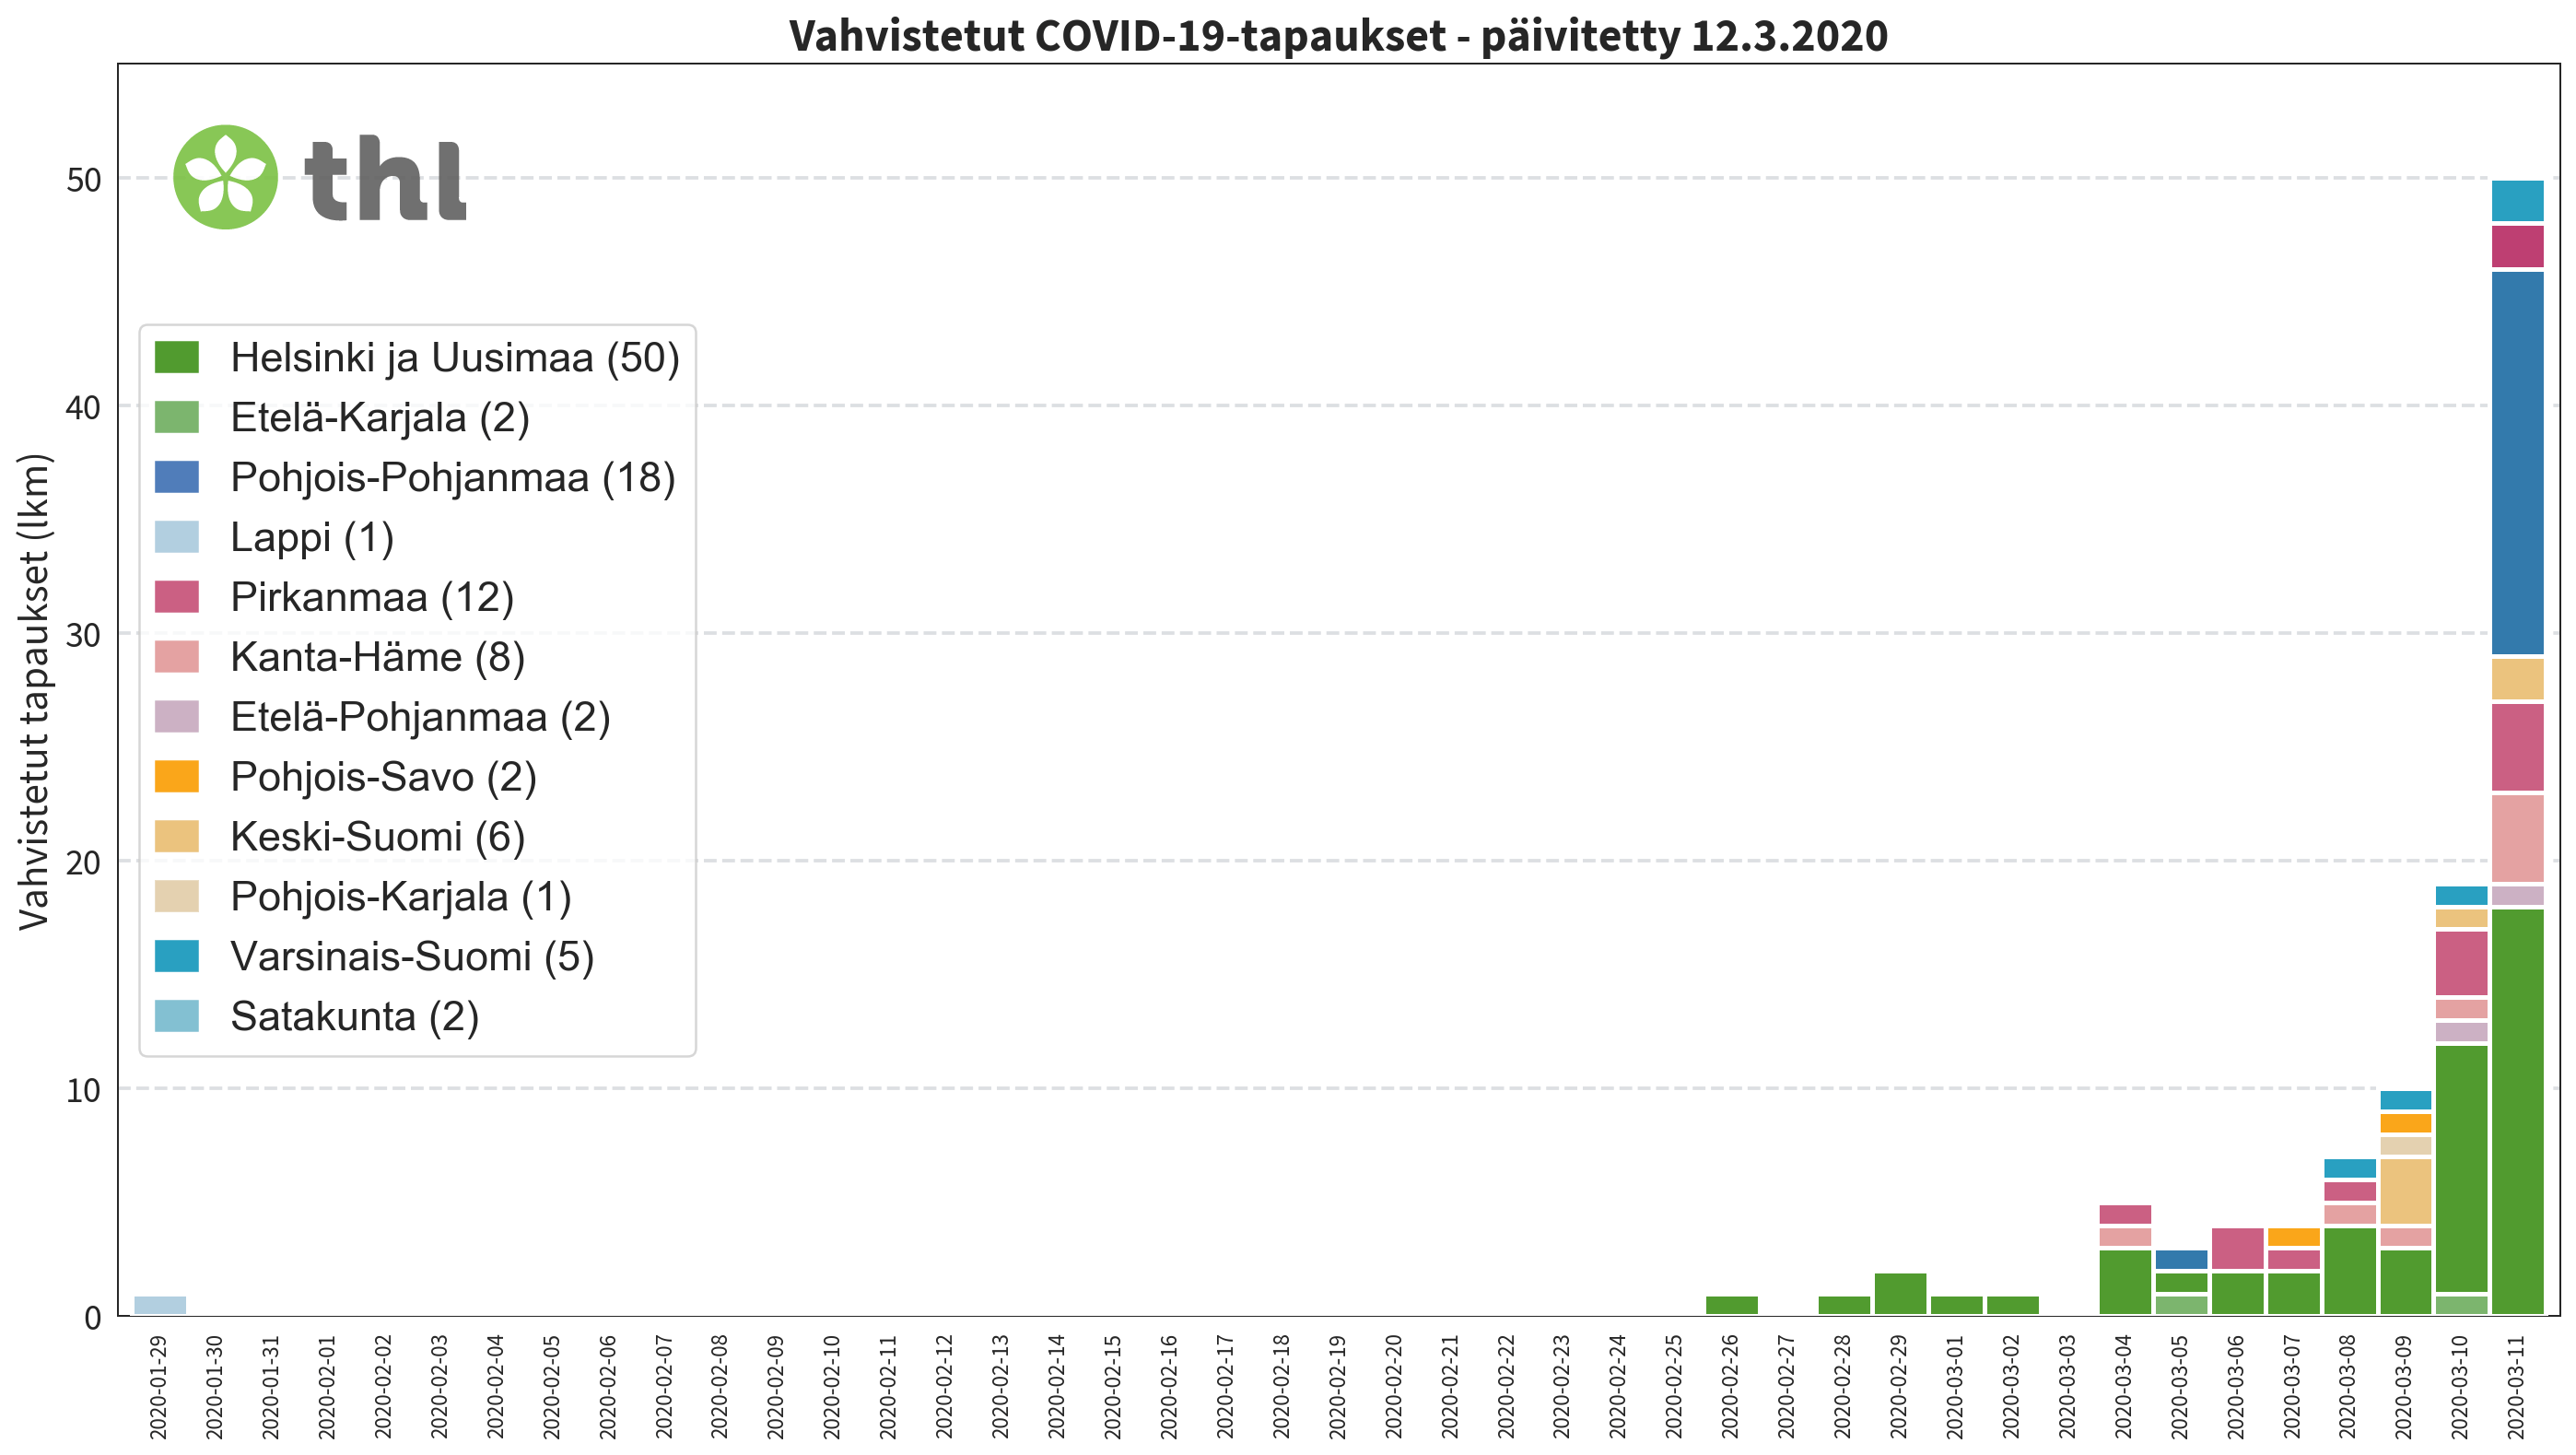 Число заболевших коронавирусом в Финляндии подскочило почти вдвое, превысив сотню. Отменены мероприятия свыше 500 человек, о поездках нужно докладывать в МИД